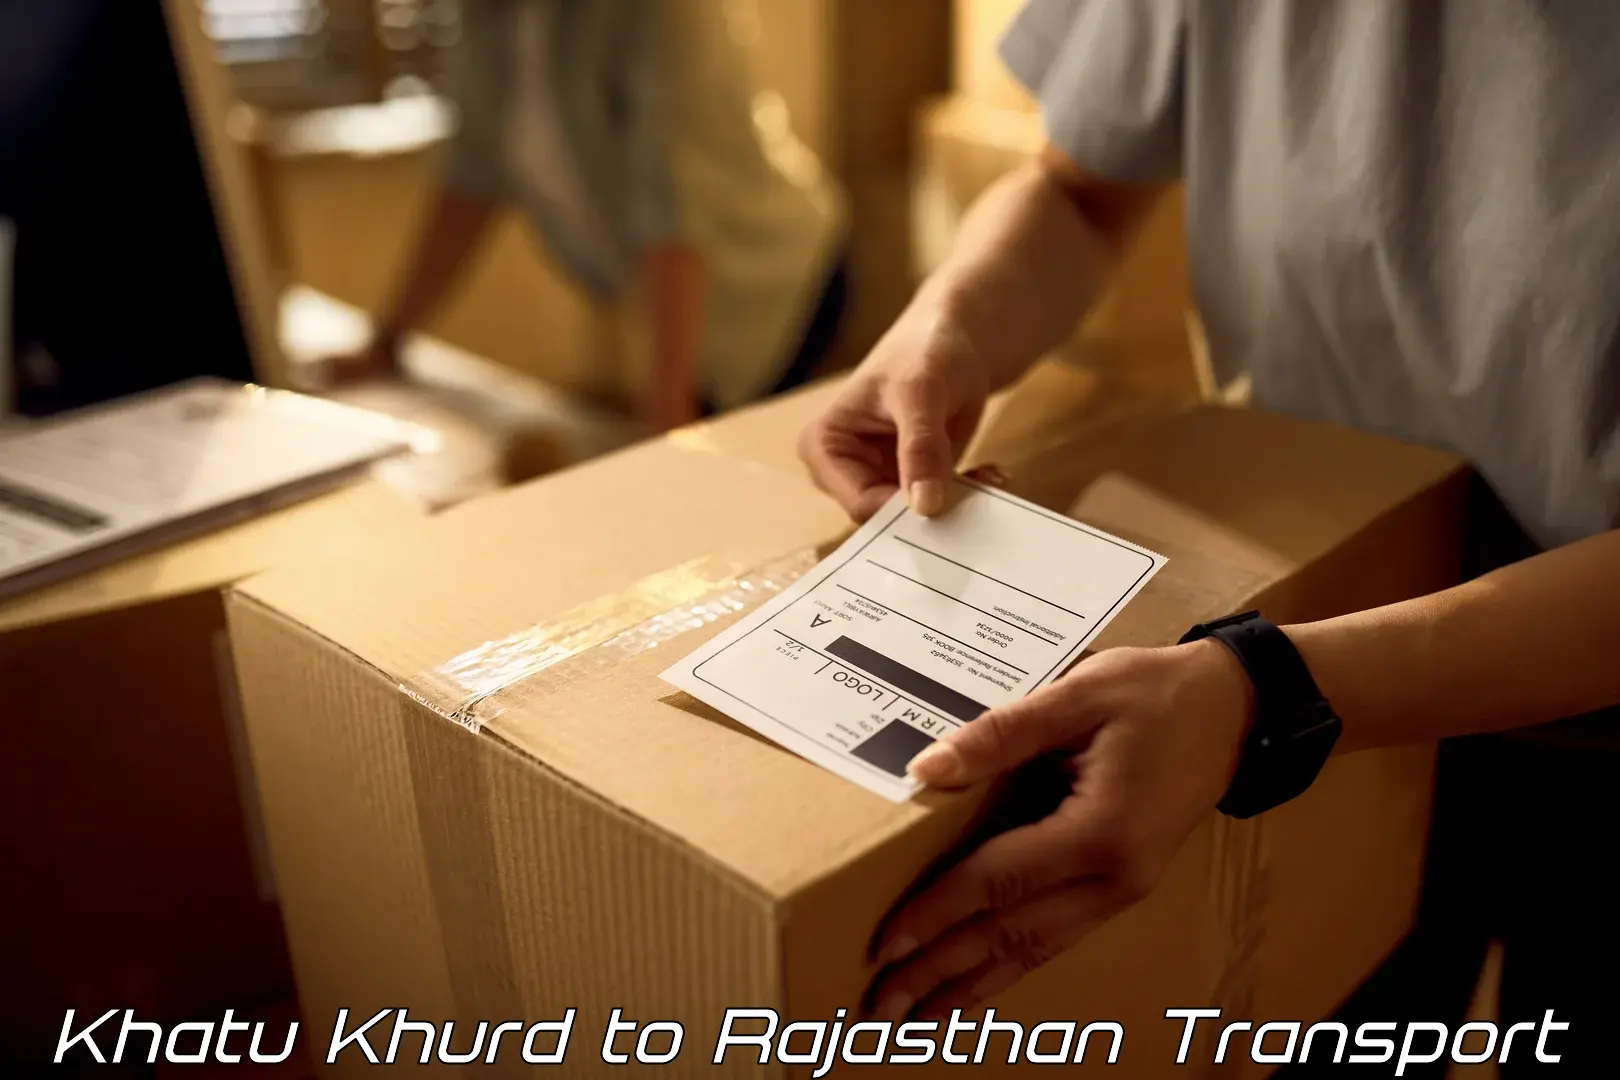 Daily transport service Khatu Khurd to Hindaun